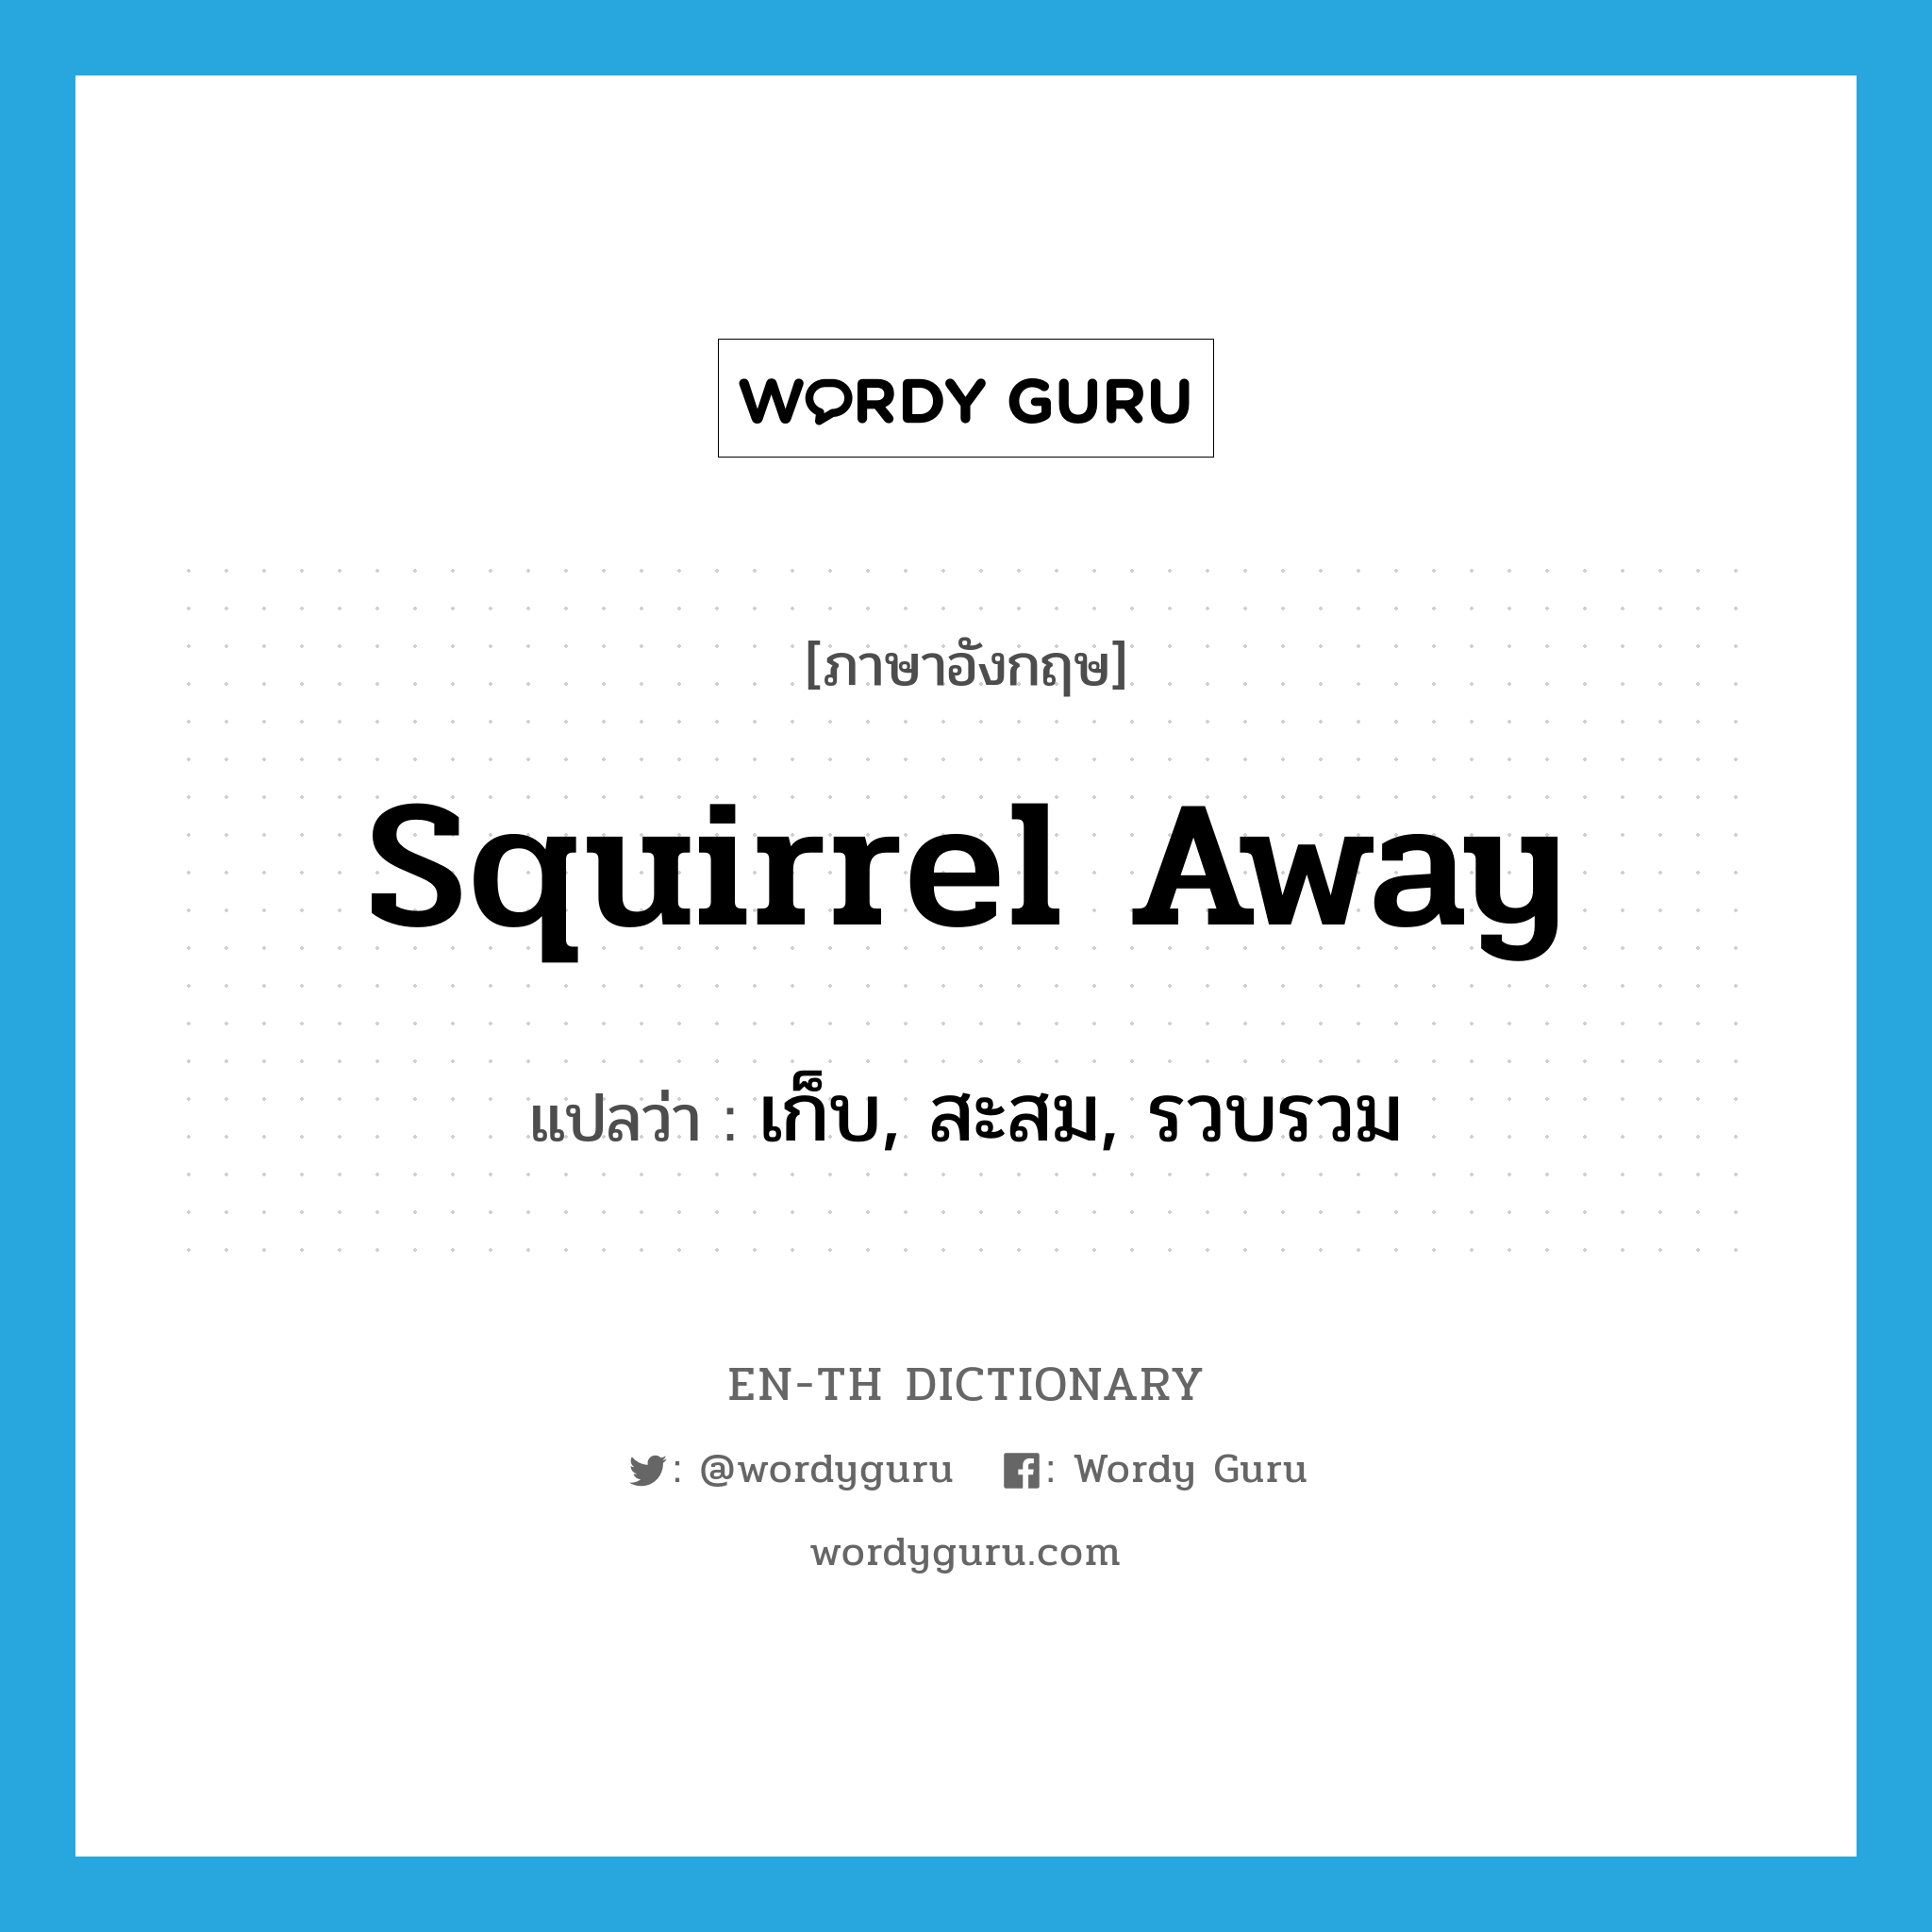 เก็บ, สะสม, รวบรวม ภาษาอังกฤษ?, คำศัพท์ภาษาอังกฤษ เก็บ, สะสม, รวบรวม แปลว่า squirrel away ประเภท PHRV หมวด PHRV